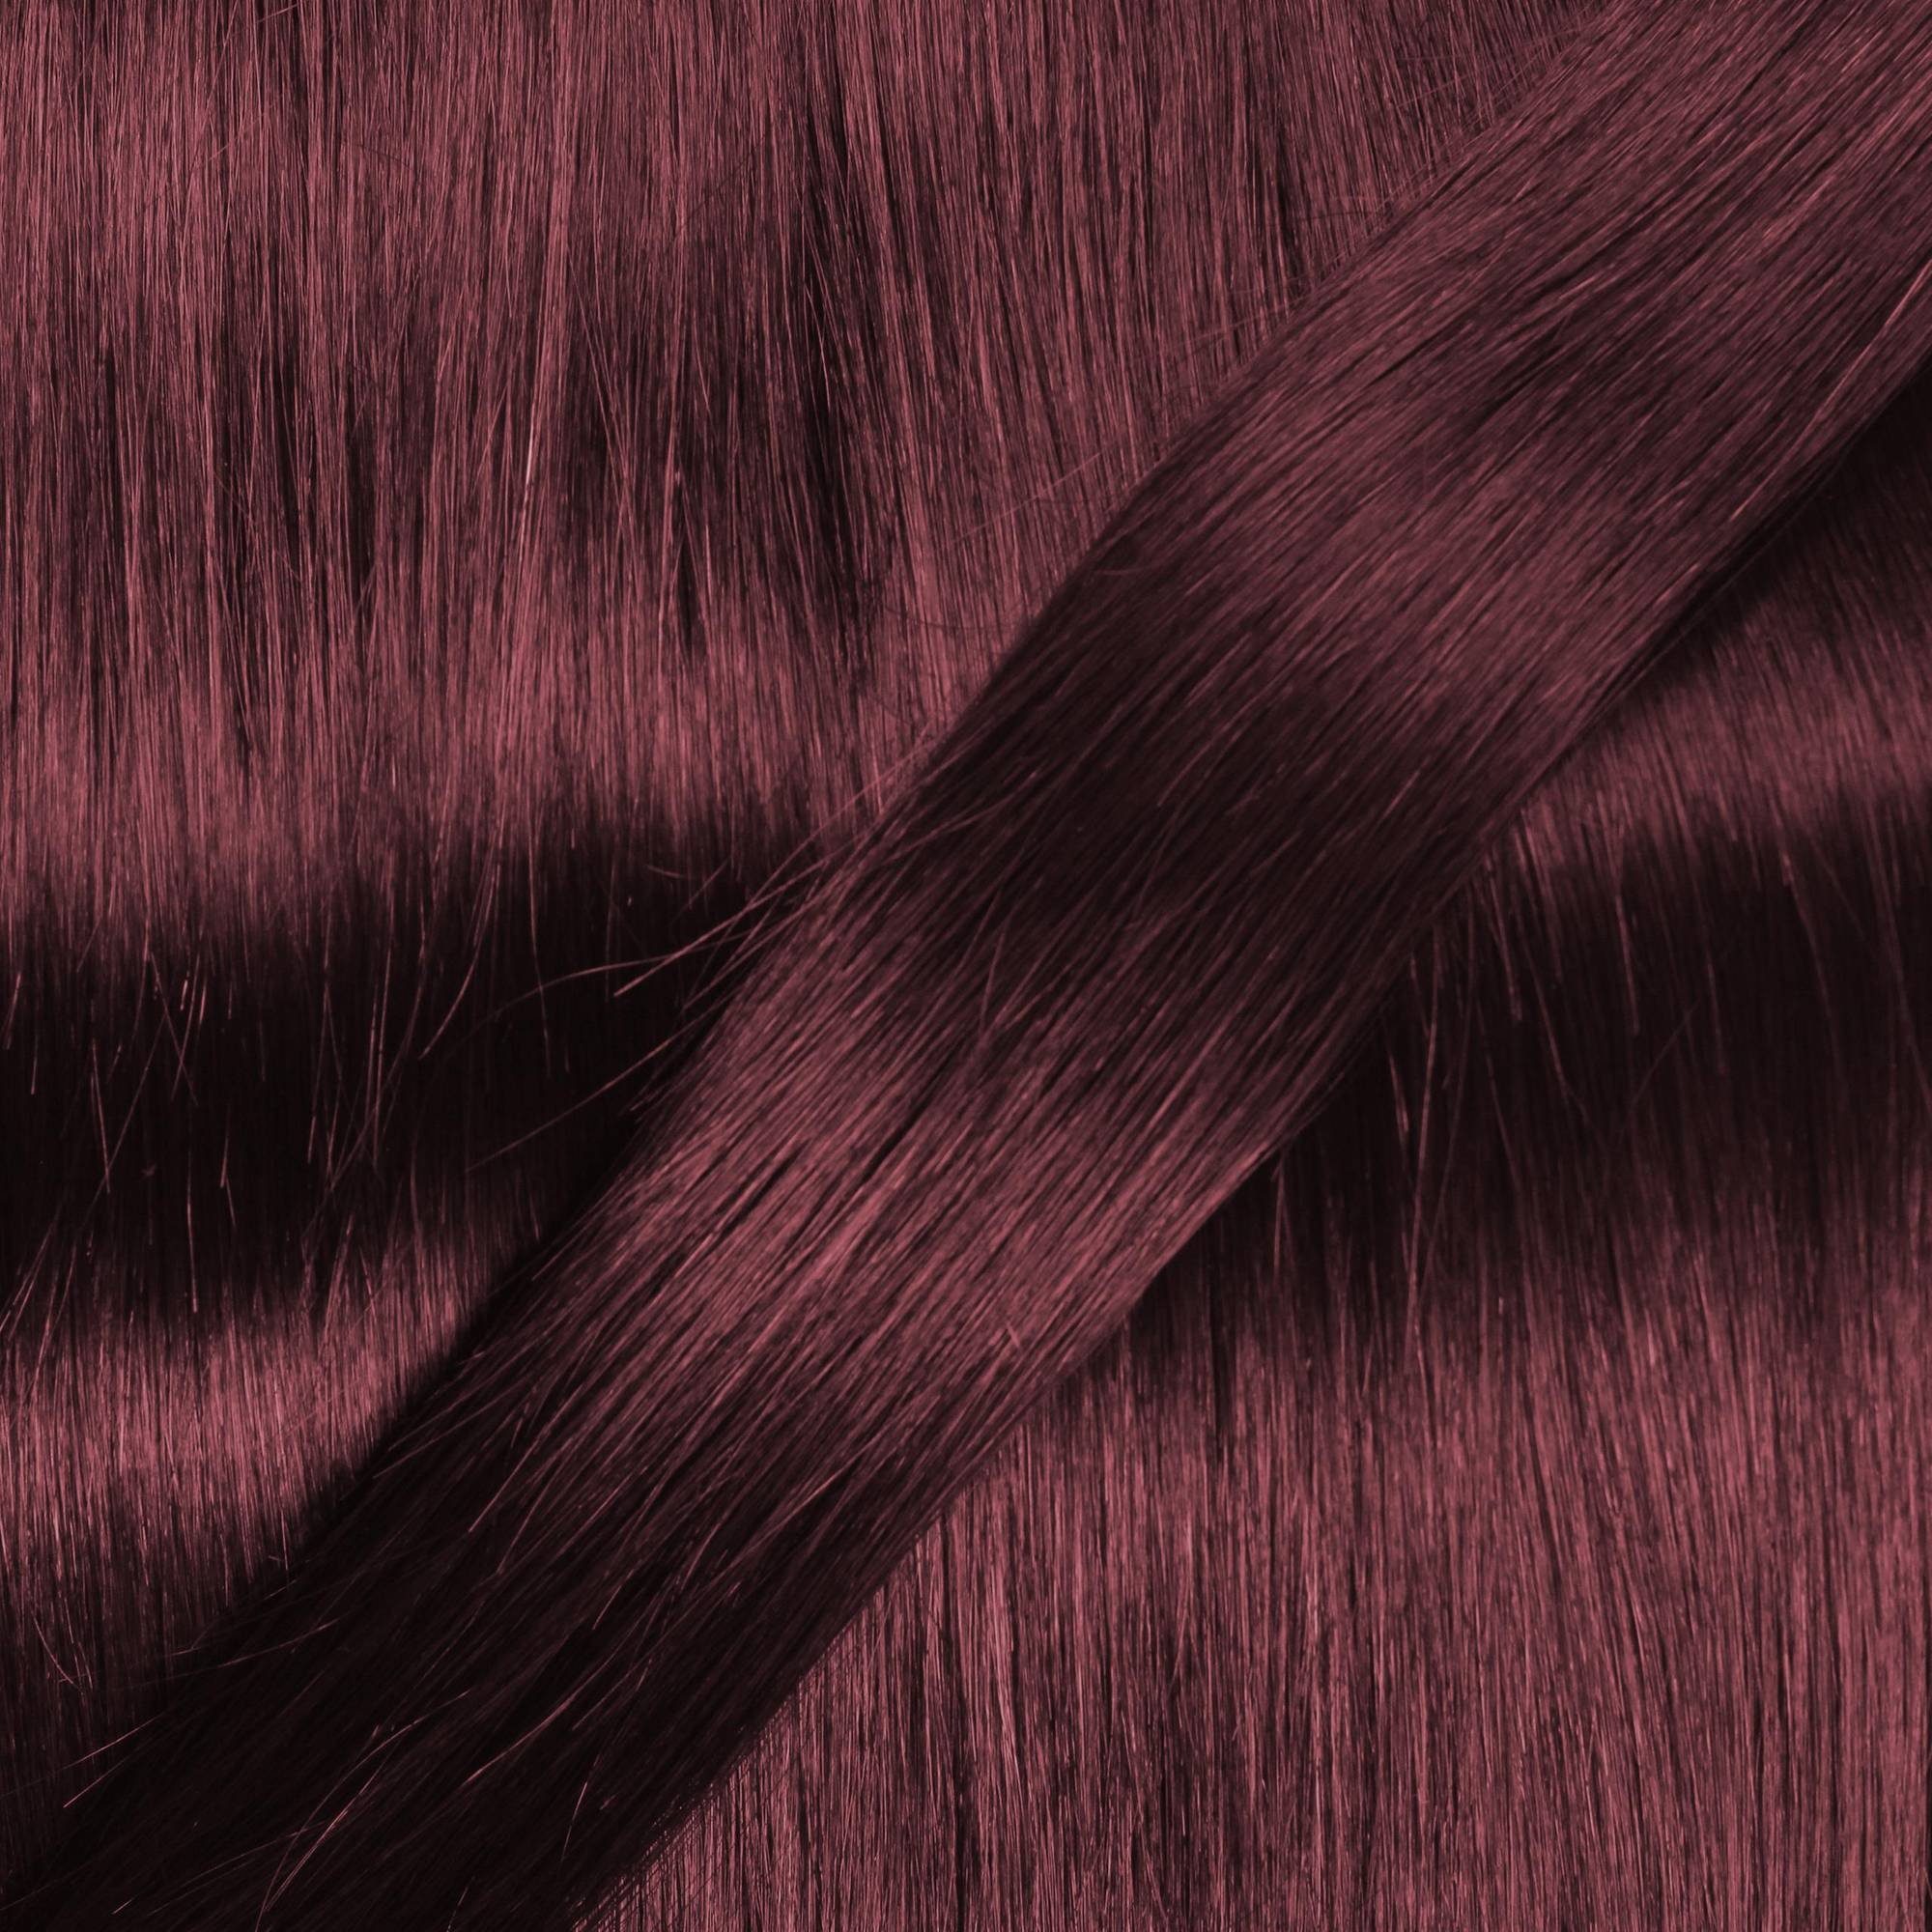 Microring Echthaar-Extension 0.5g gewellt #55/66 hair2heart Loops Violett - 60cm Hellbraun